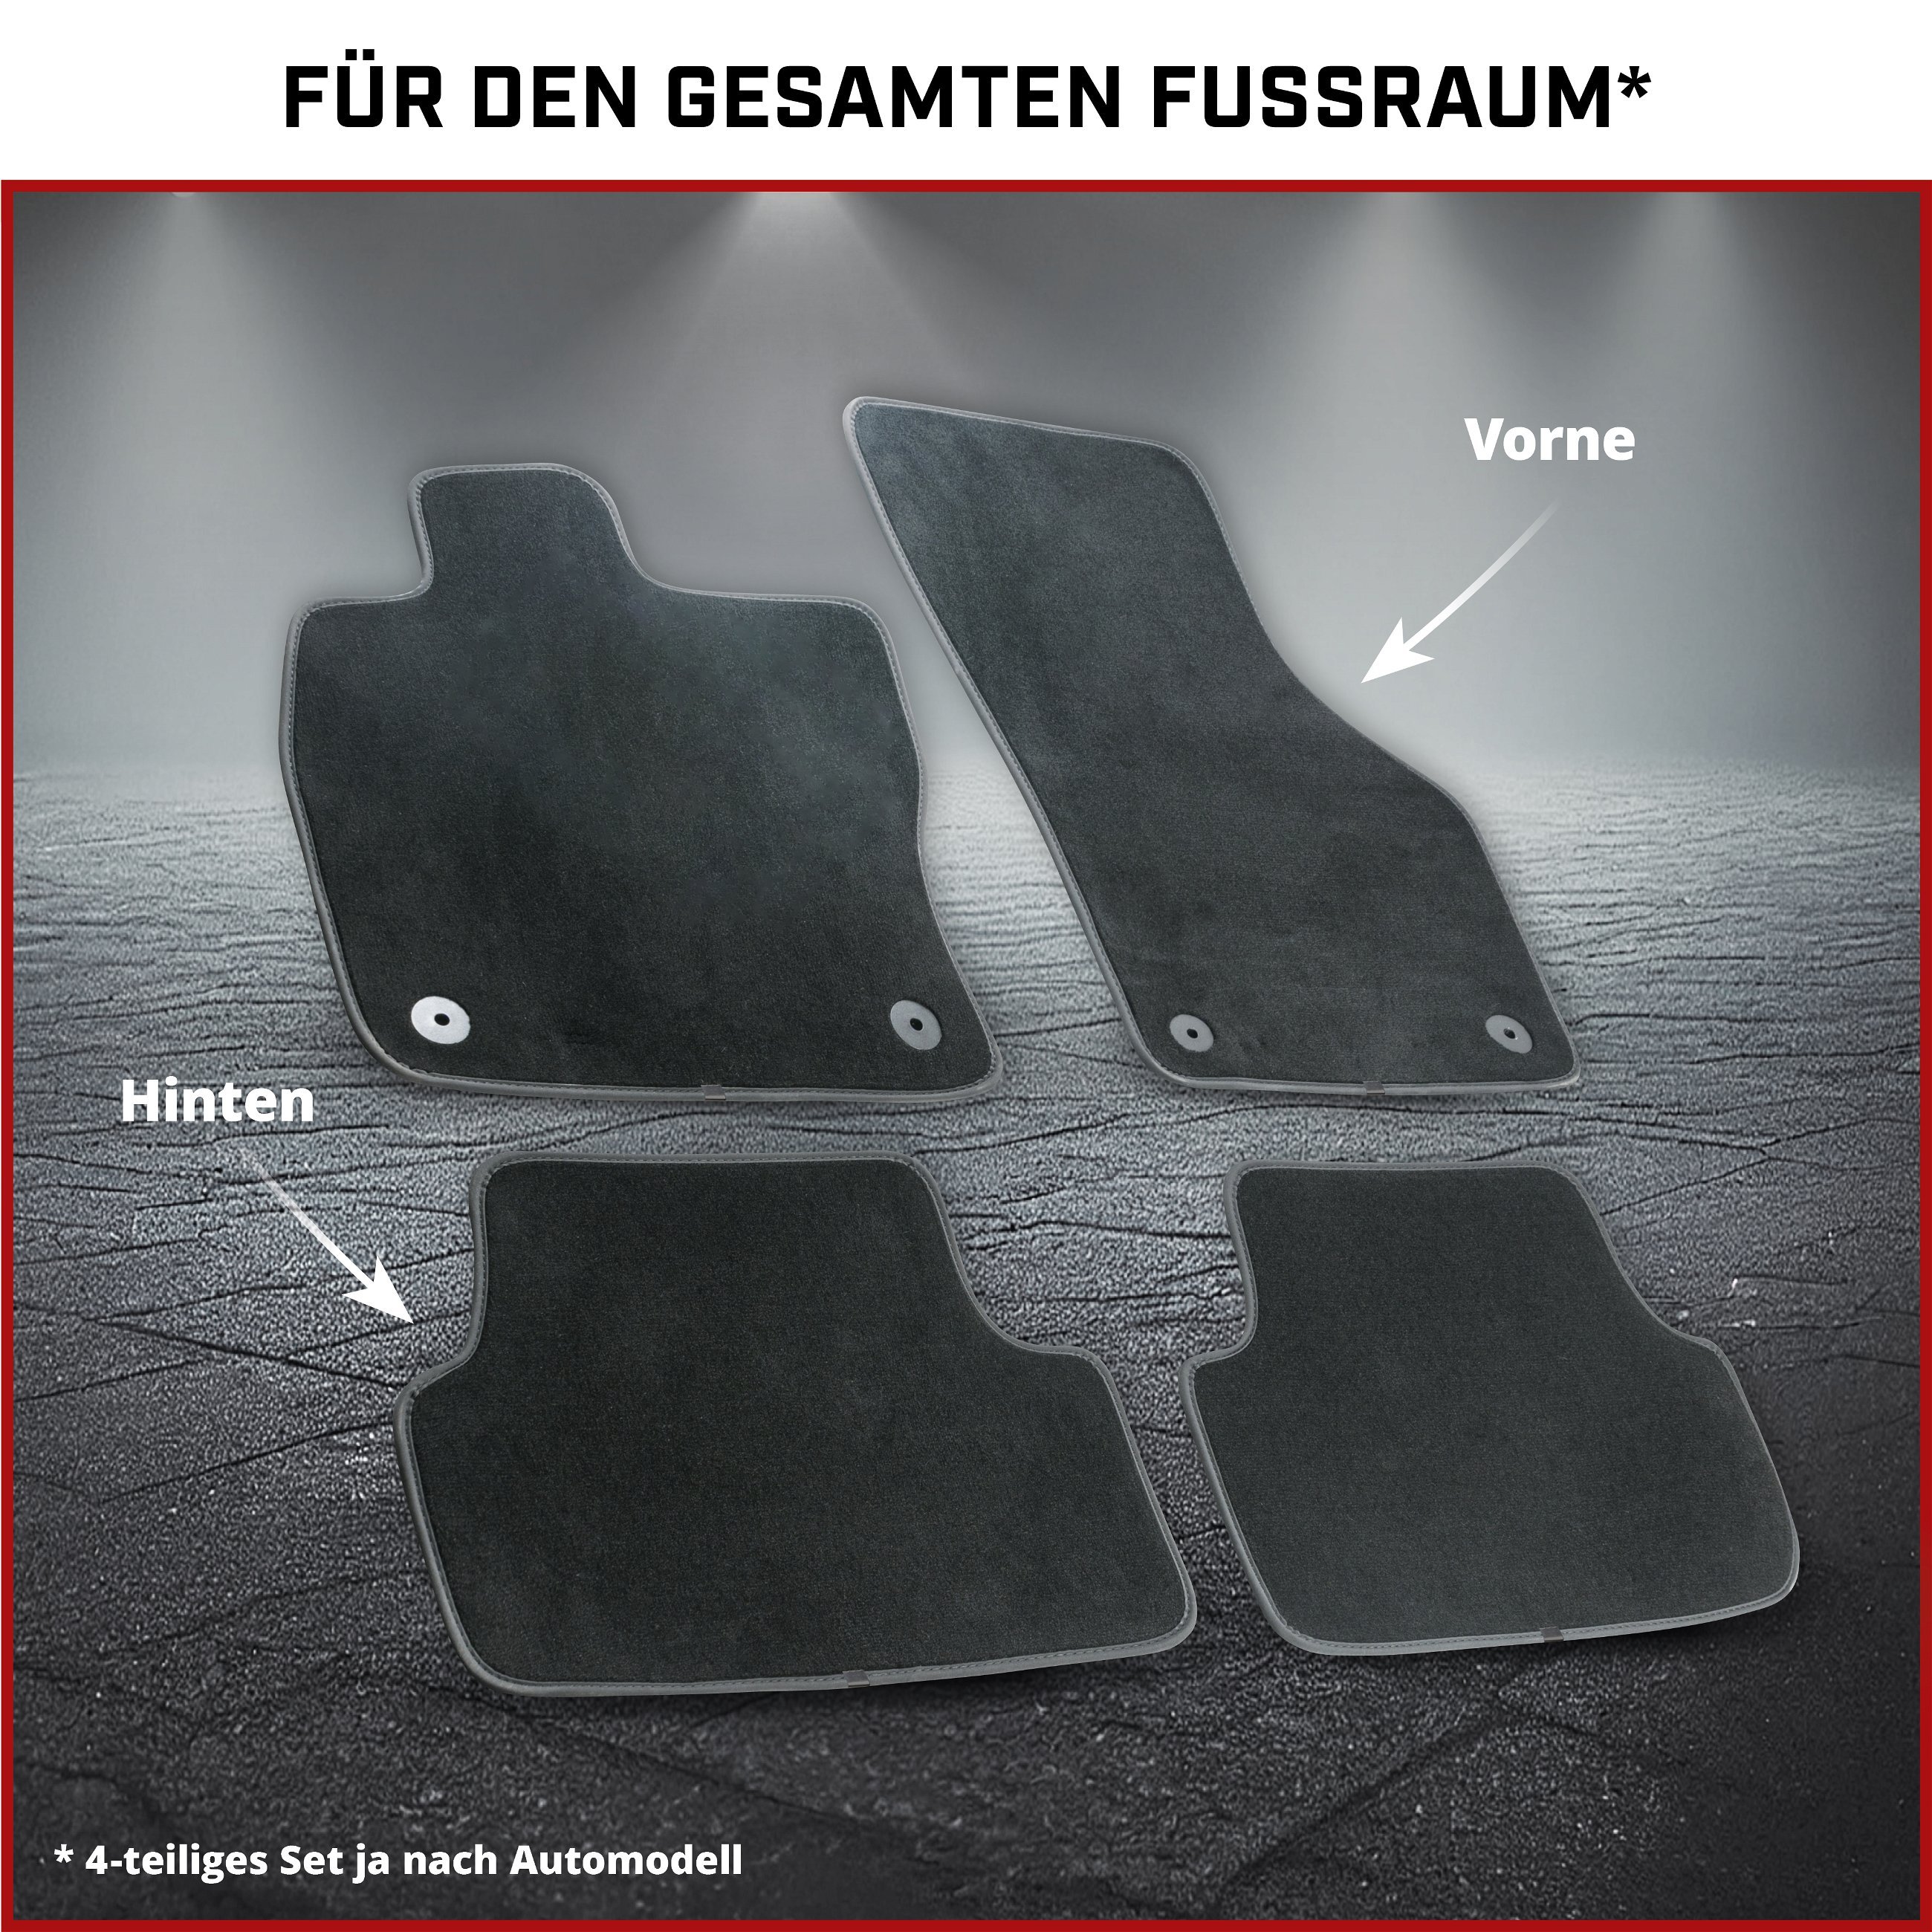 Premium Fußmatten für VW T5 04/2003-08/2015, VW T6 04/2015-Heute, 3-Sitzer